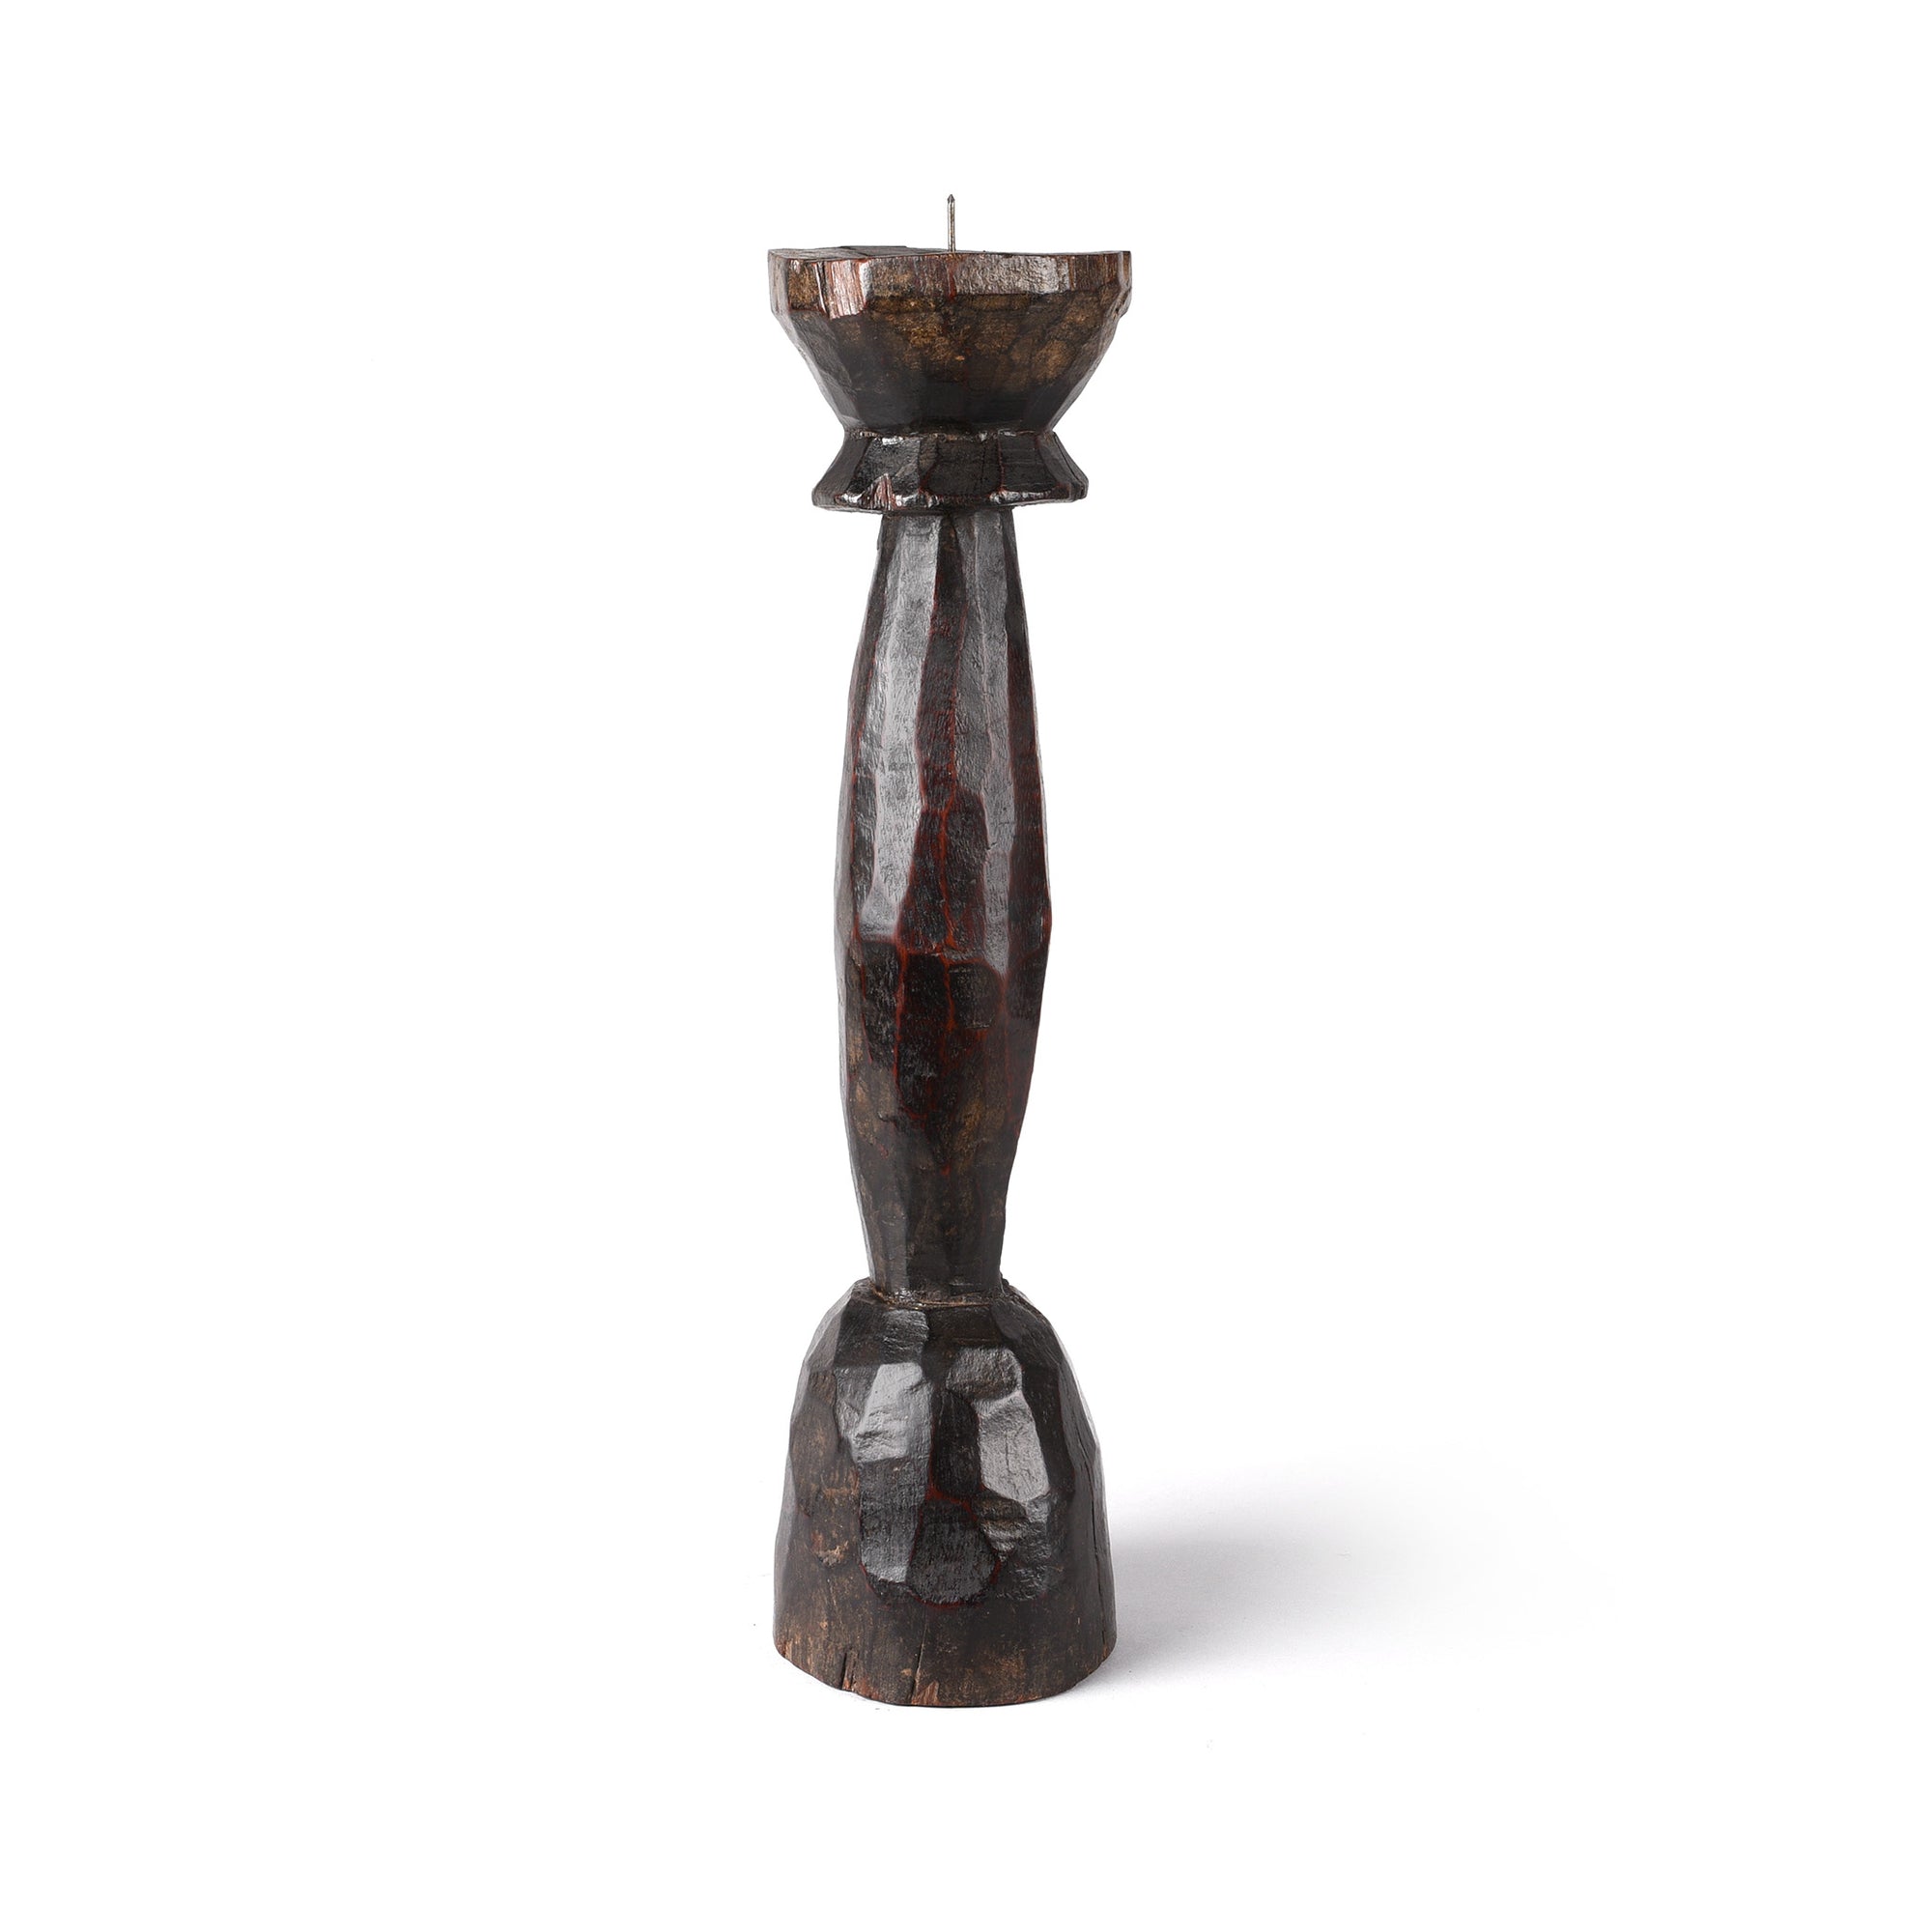 Teak Tribal Candlestick from Banswara - 19thC | Indigo Antiques